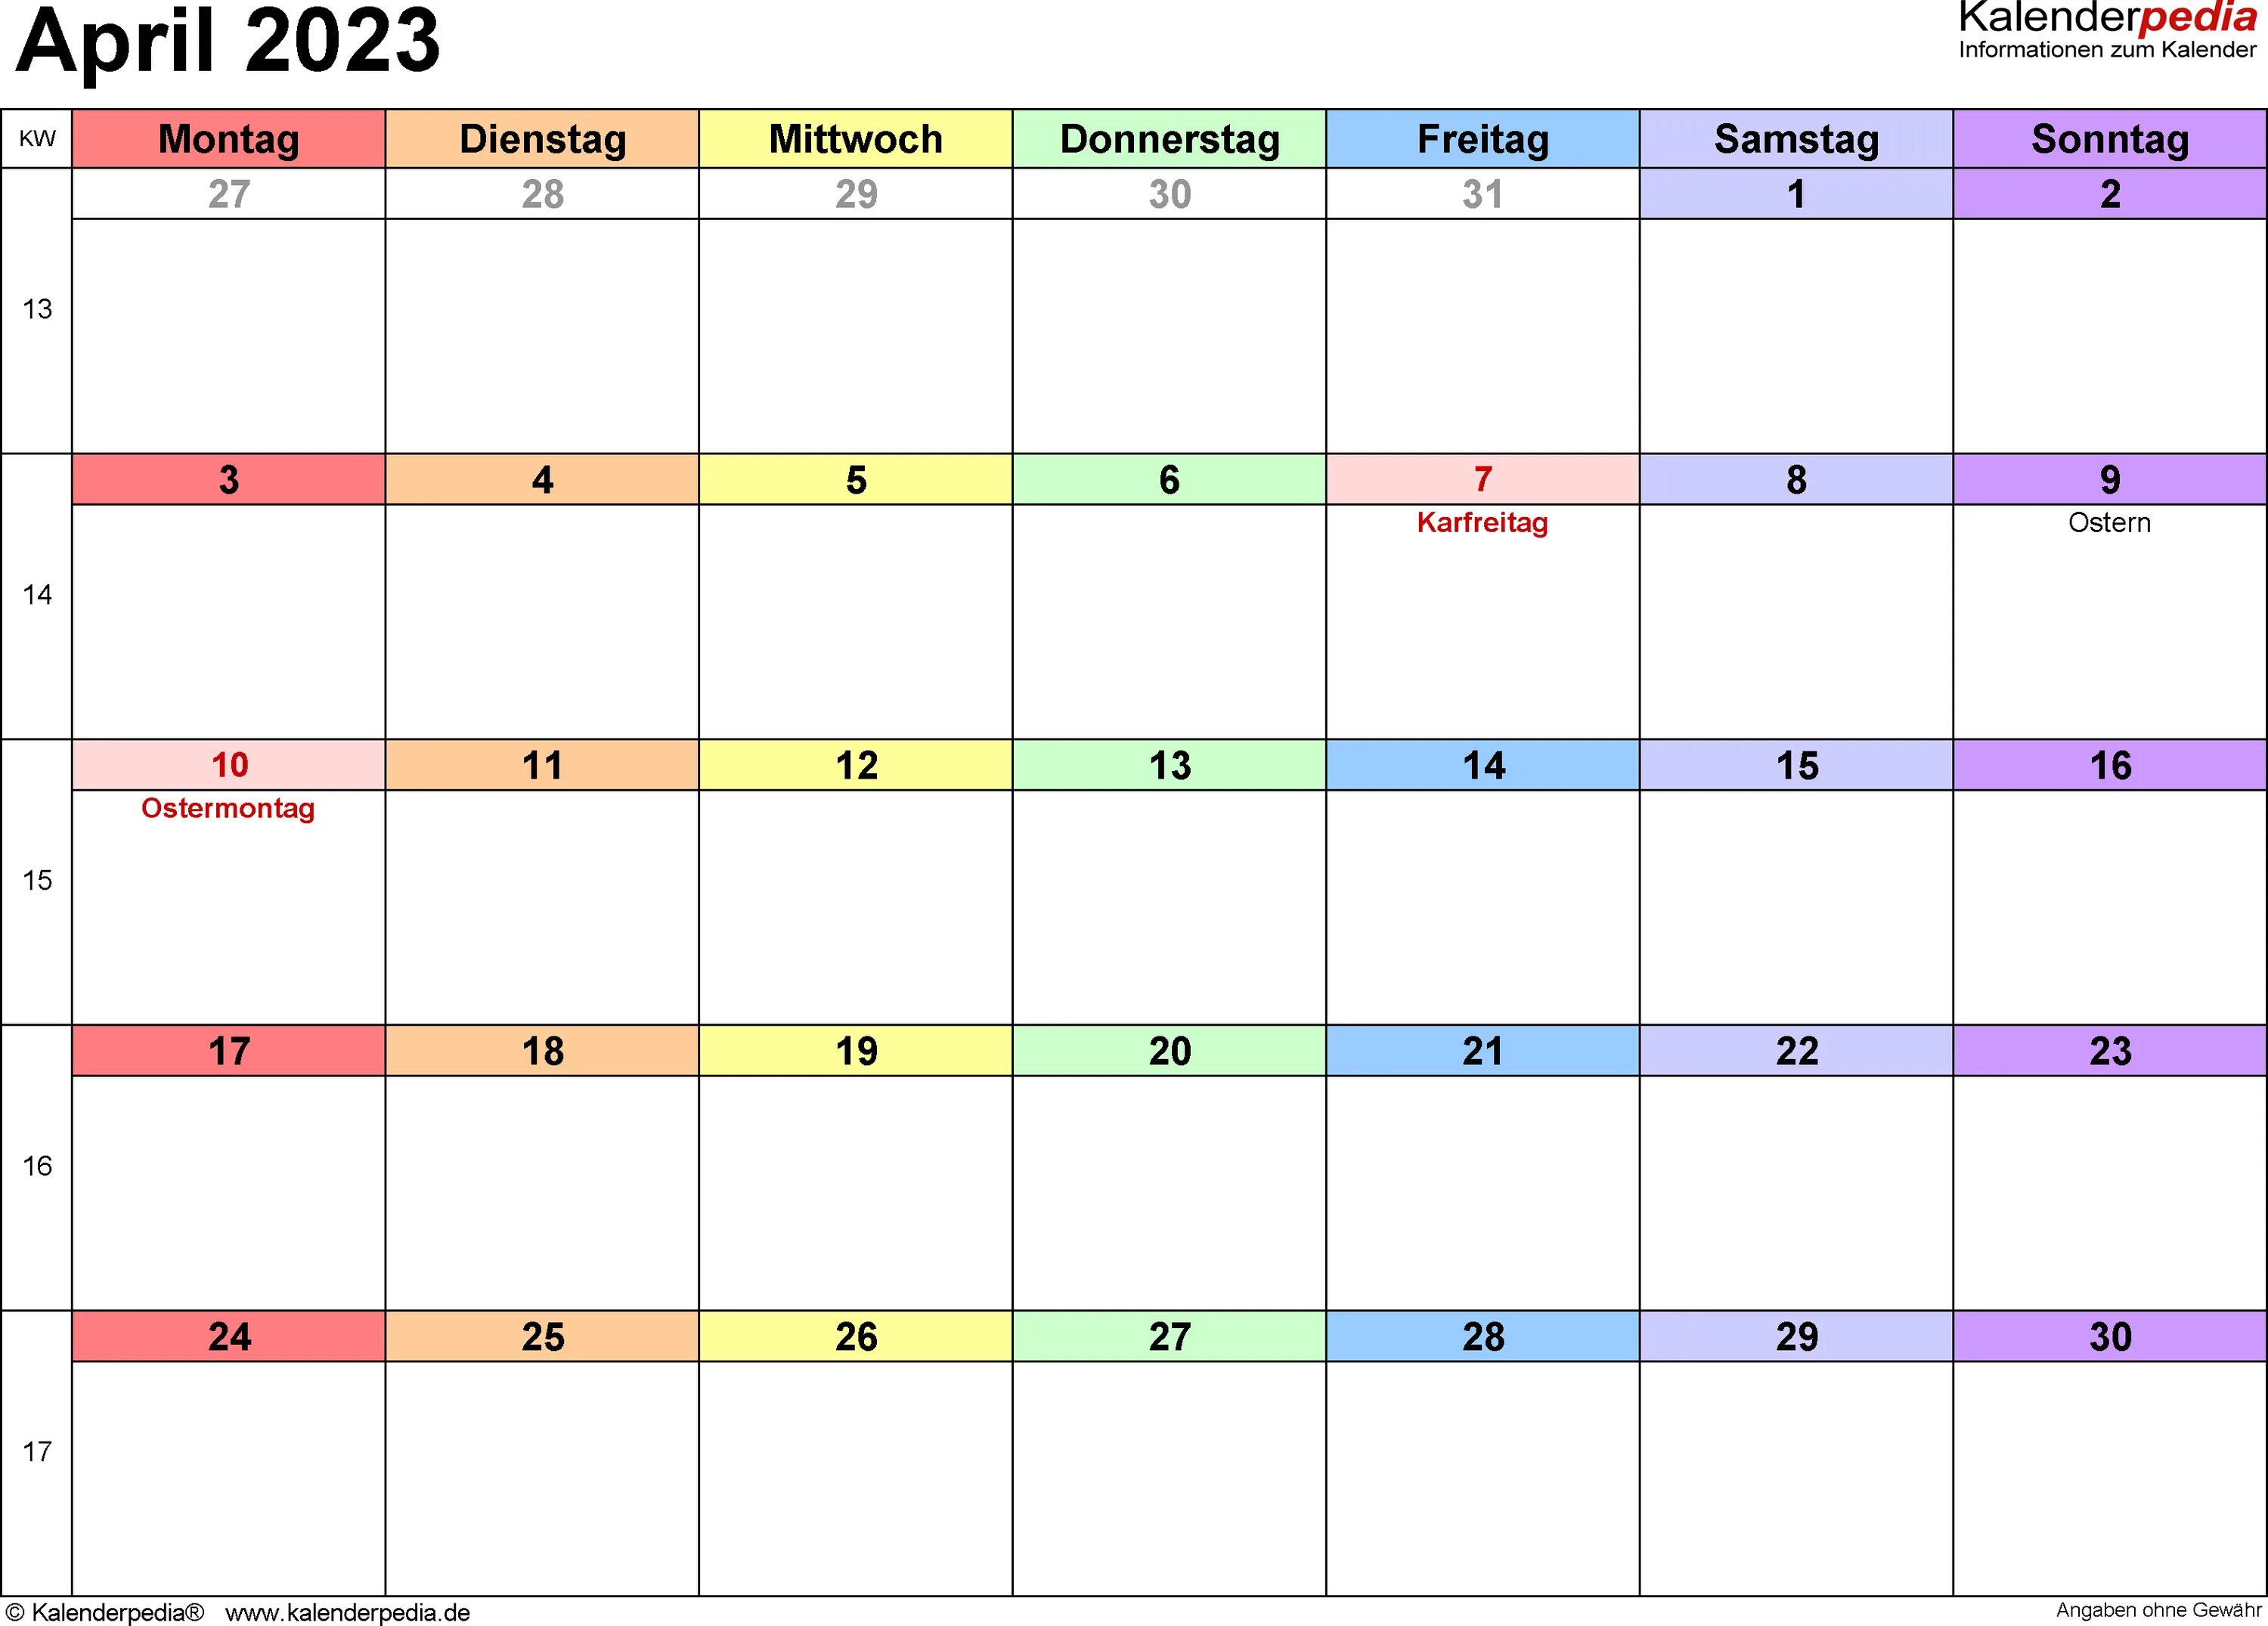 Тур апрель 2023. Календарь апрель 2023. Kalender 2023. Календарь июнь 2023. Calendar June 2023.